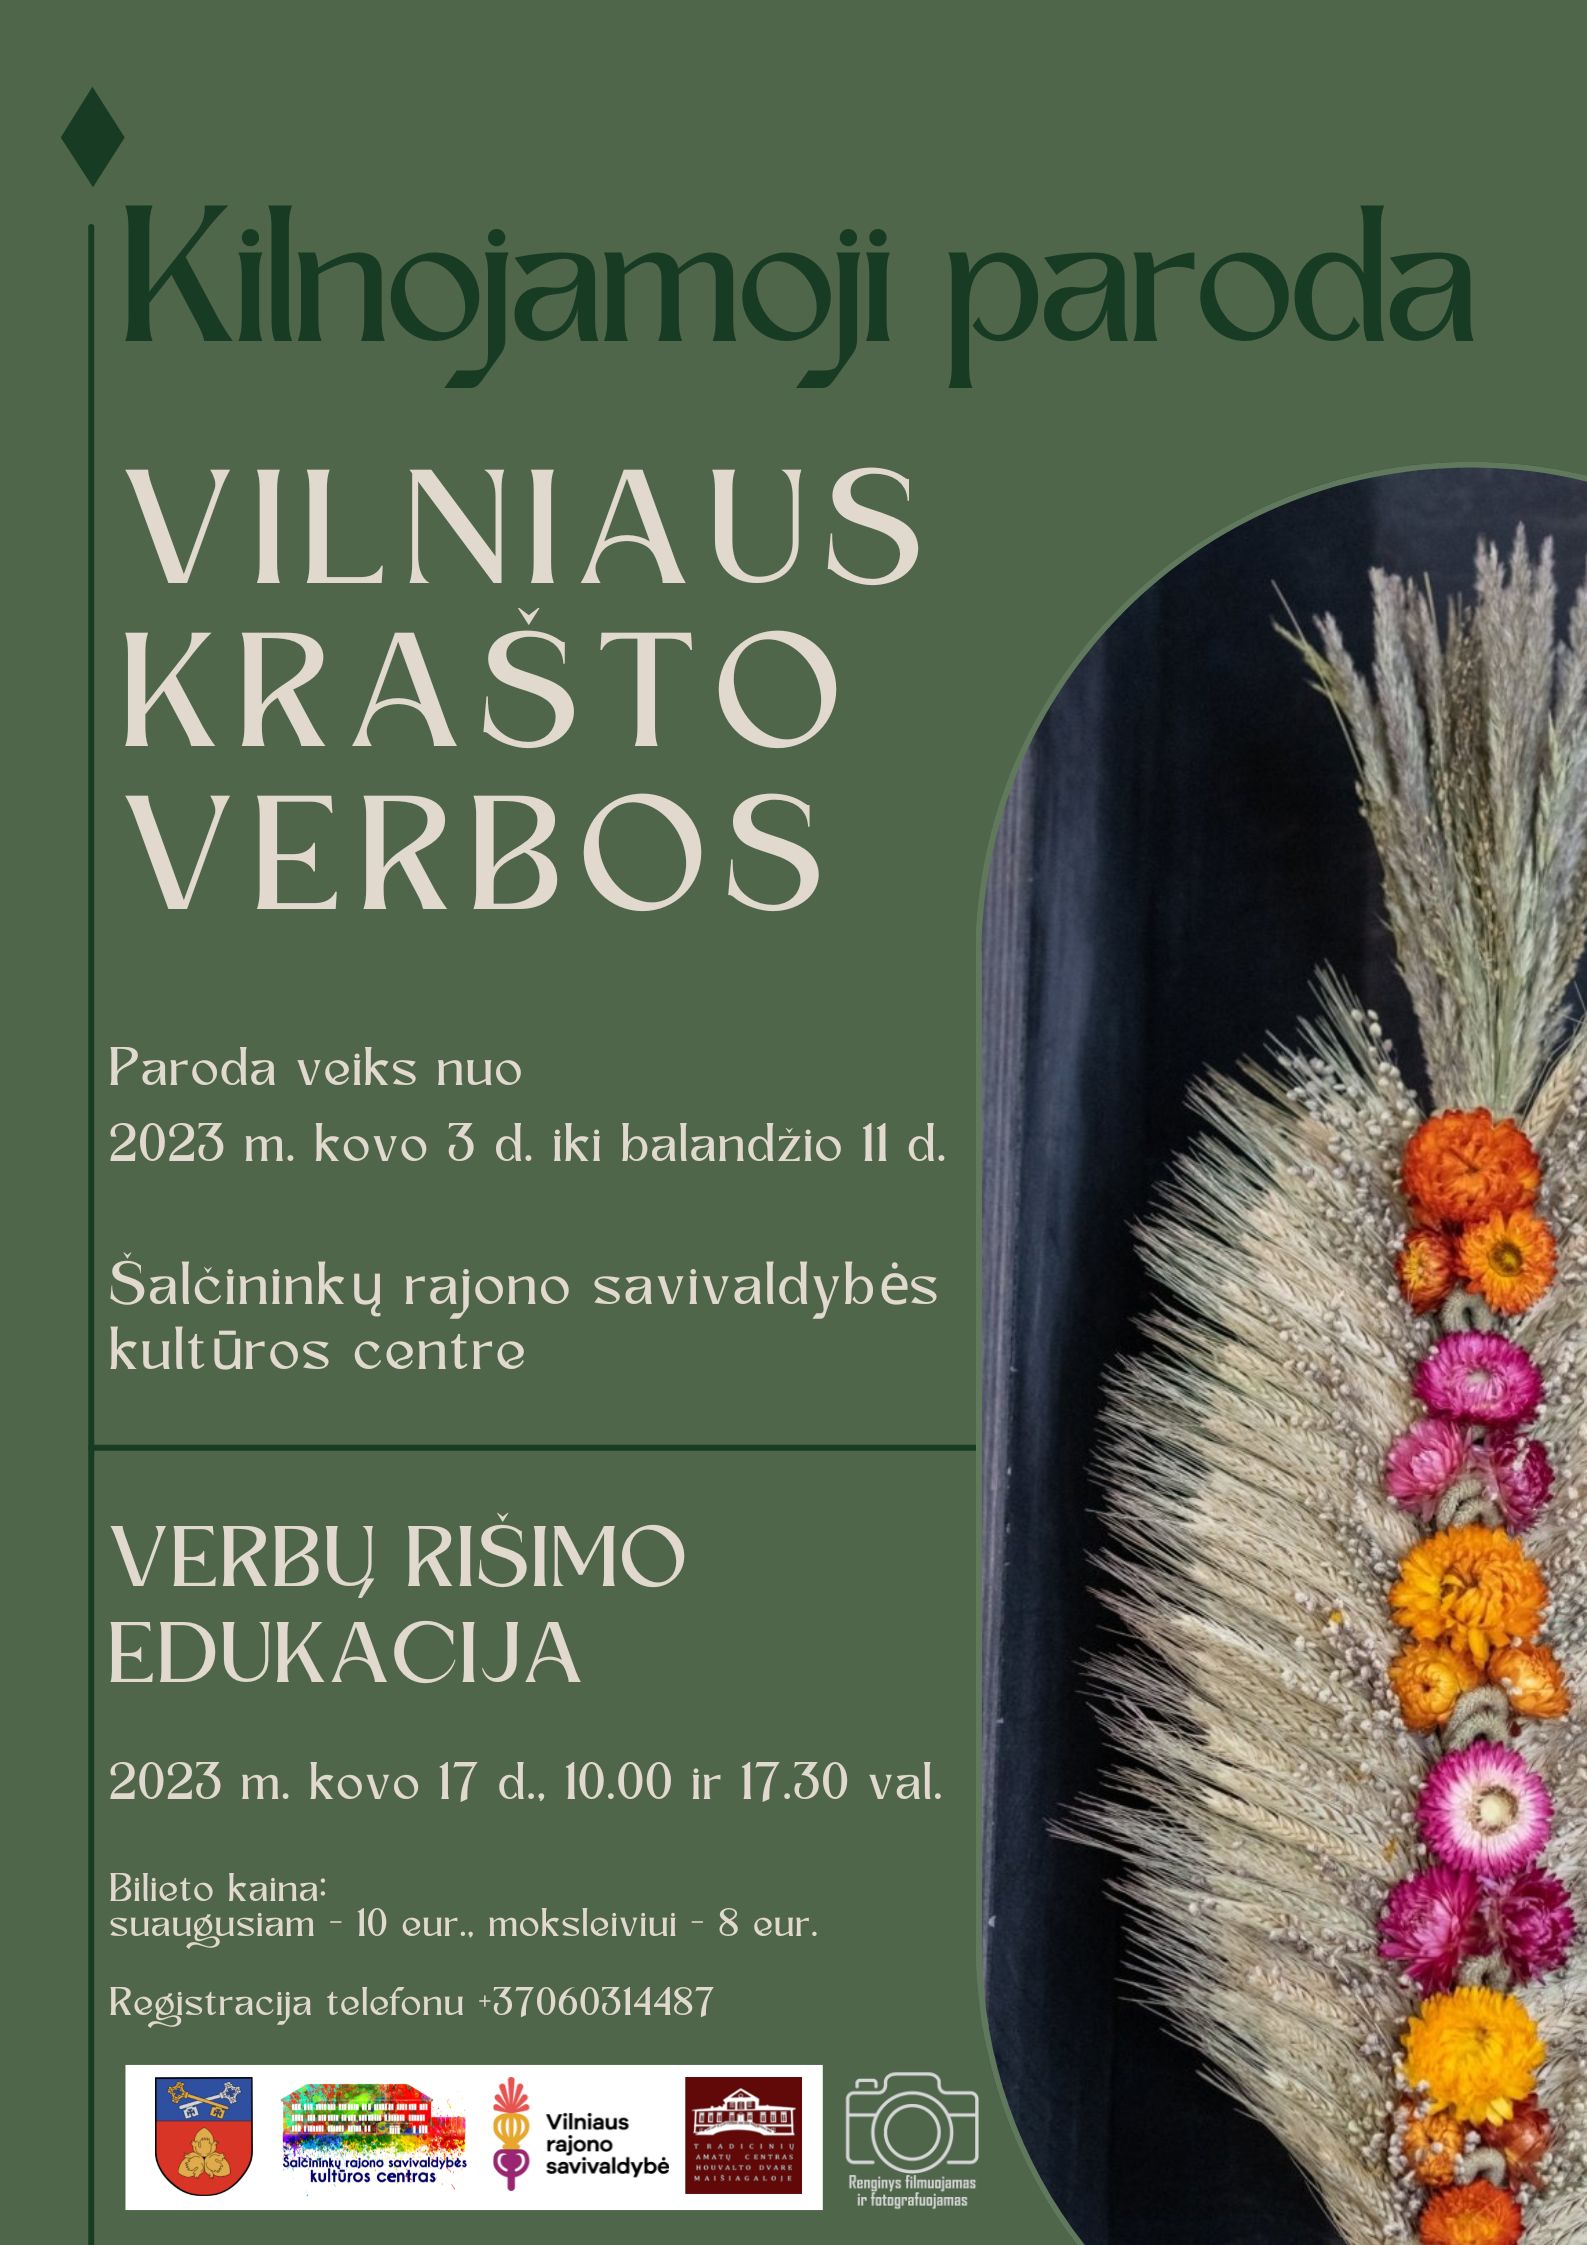 You are currently viewing Vilniaus krašto verbų paroda ir verbų rišimo edukacija